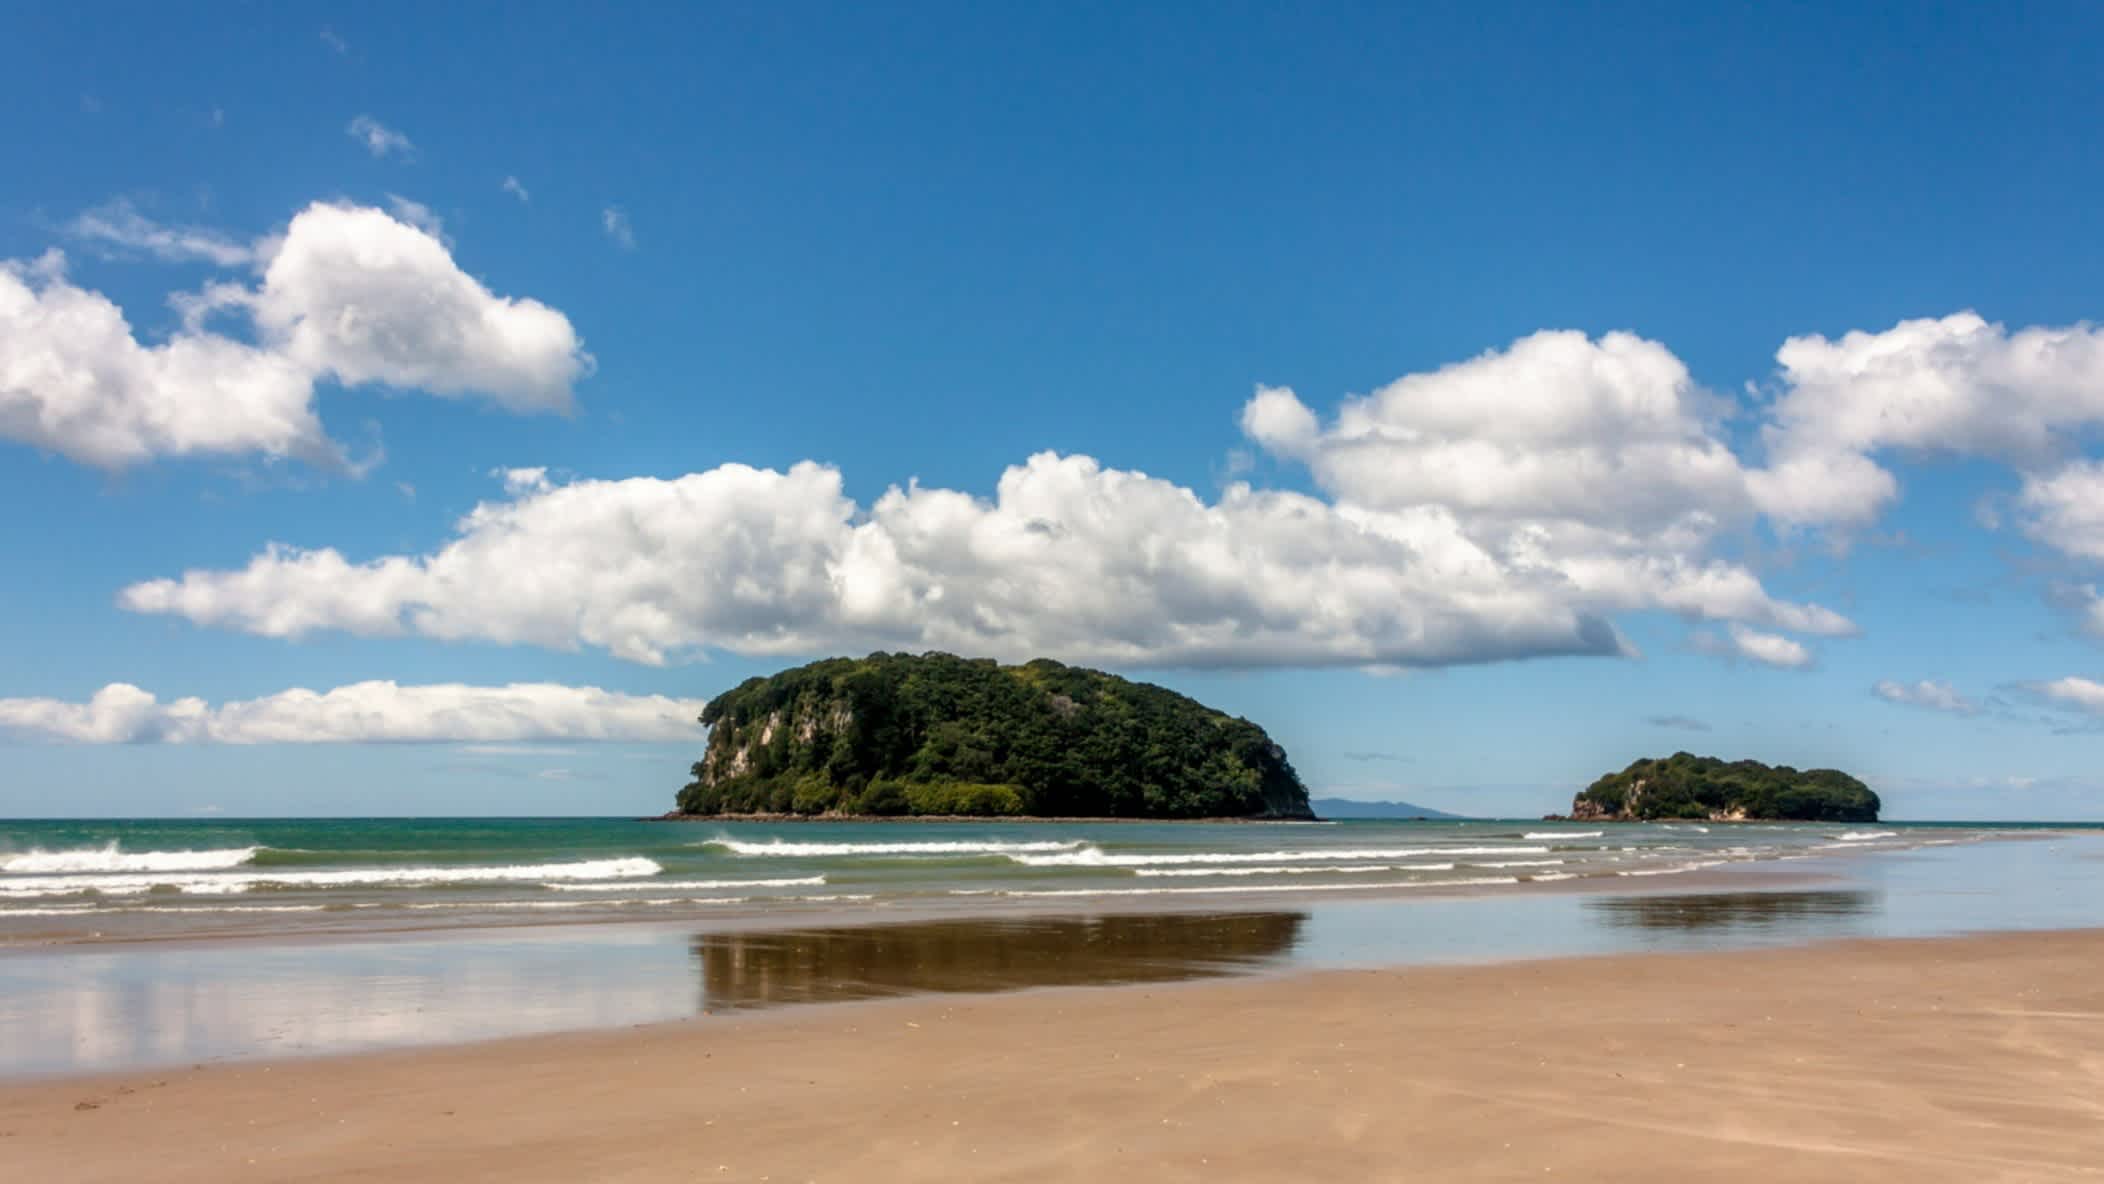 Der Strand Whangamata Beach, North Island, Neuseeland mit Blick auf den Strand und vorgelagerten unbewohnten Inseln.
